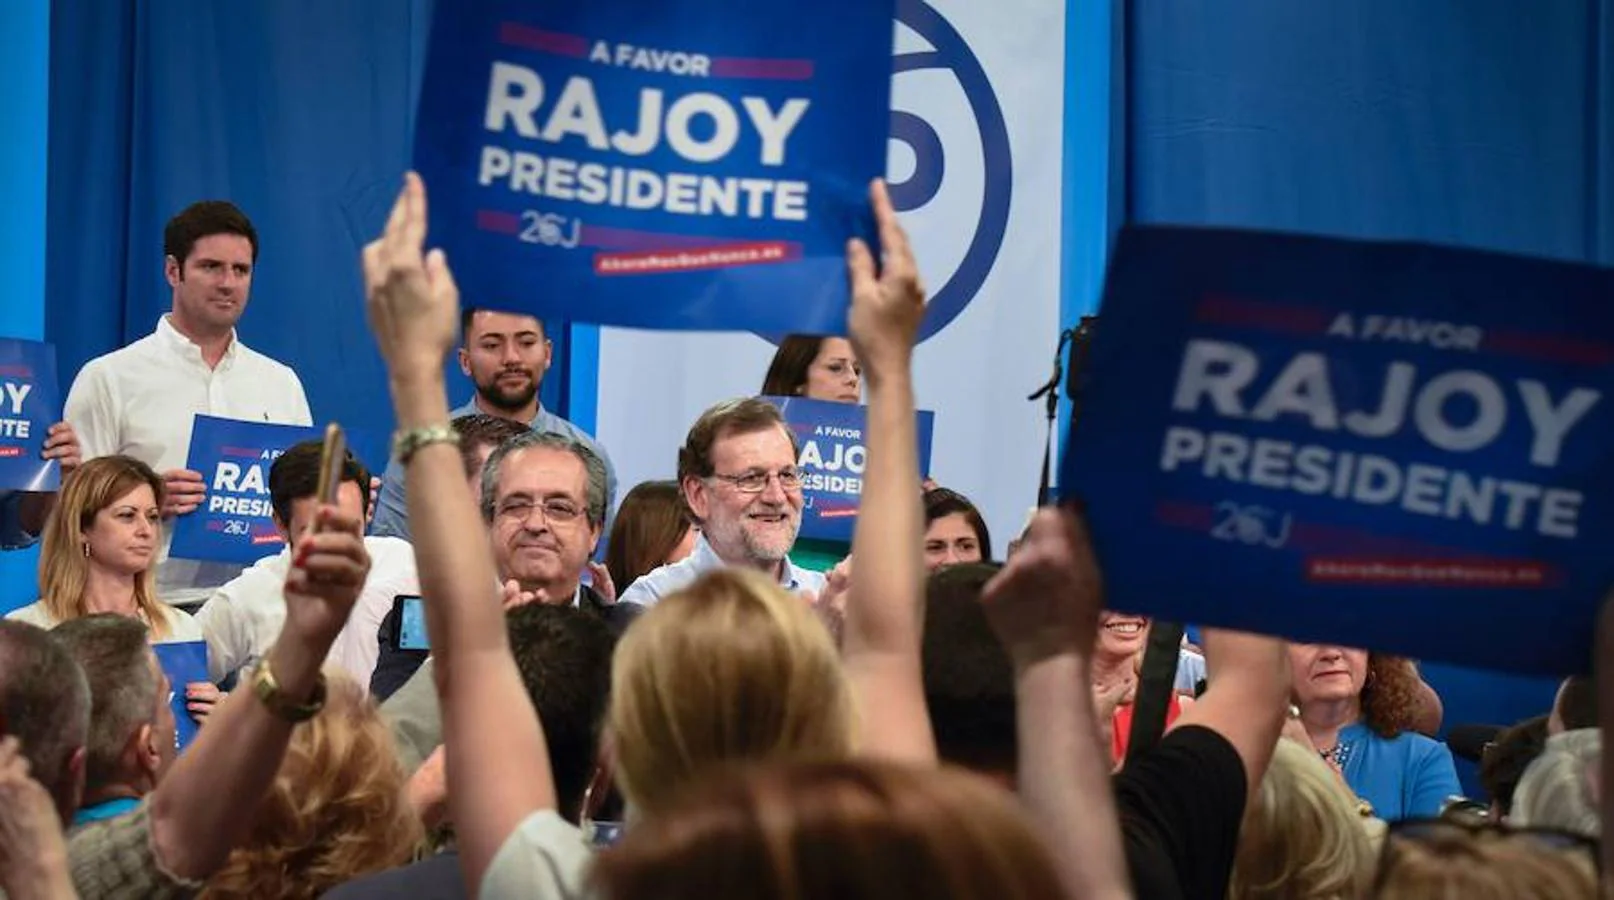 El presidente en funciones, Mariano Rajoy, durante su mitin en Tenerife se ha mostrado confiado ante las próximas elecciones: «Vamos a ganar las elecciones, no os quepa ninguna duda», ha reiterado en varias ocasiones